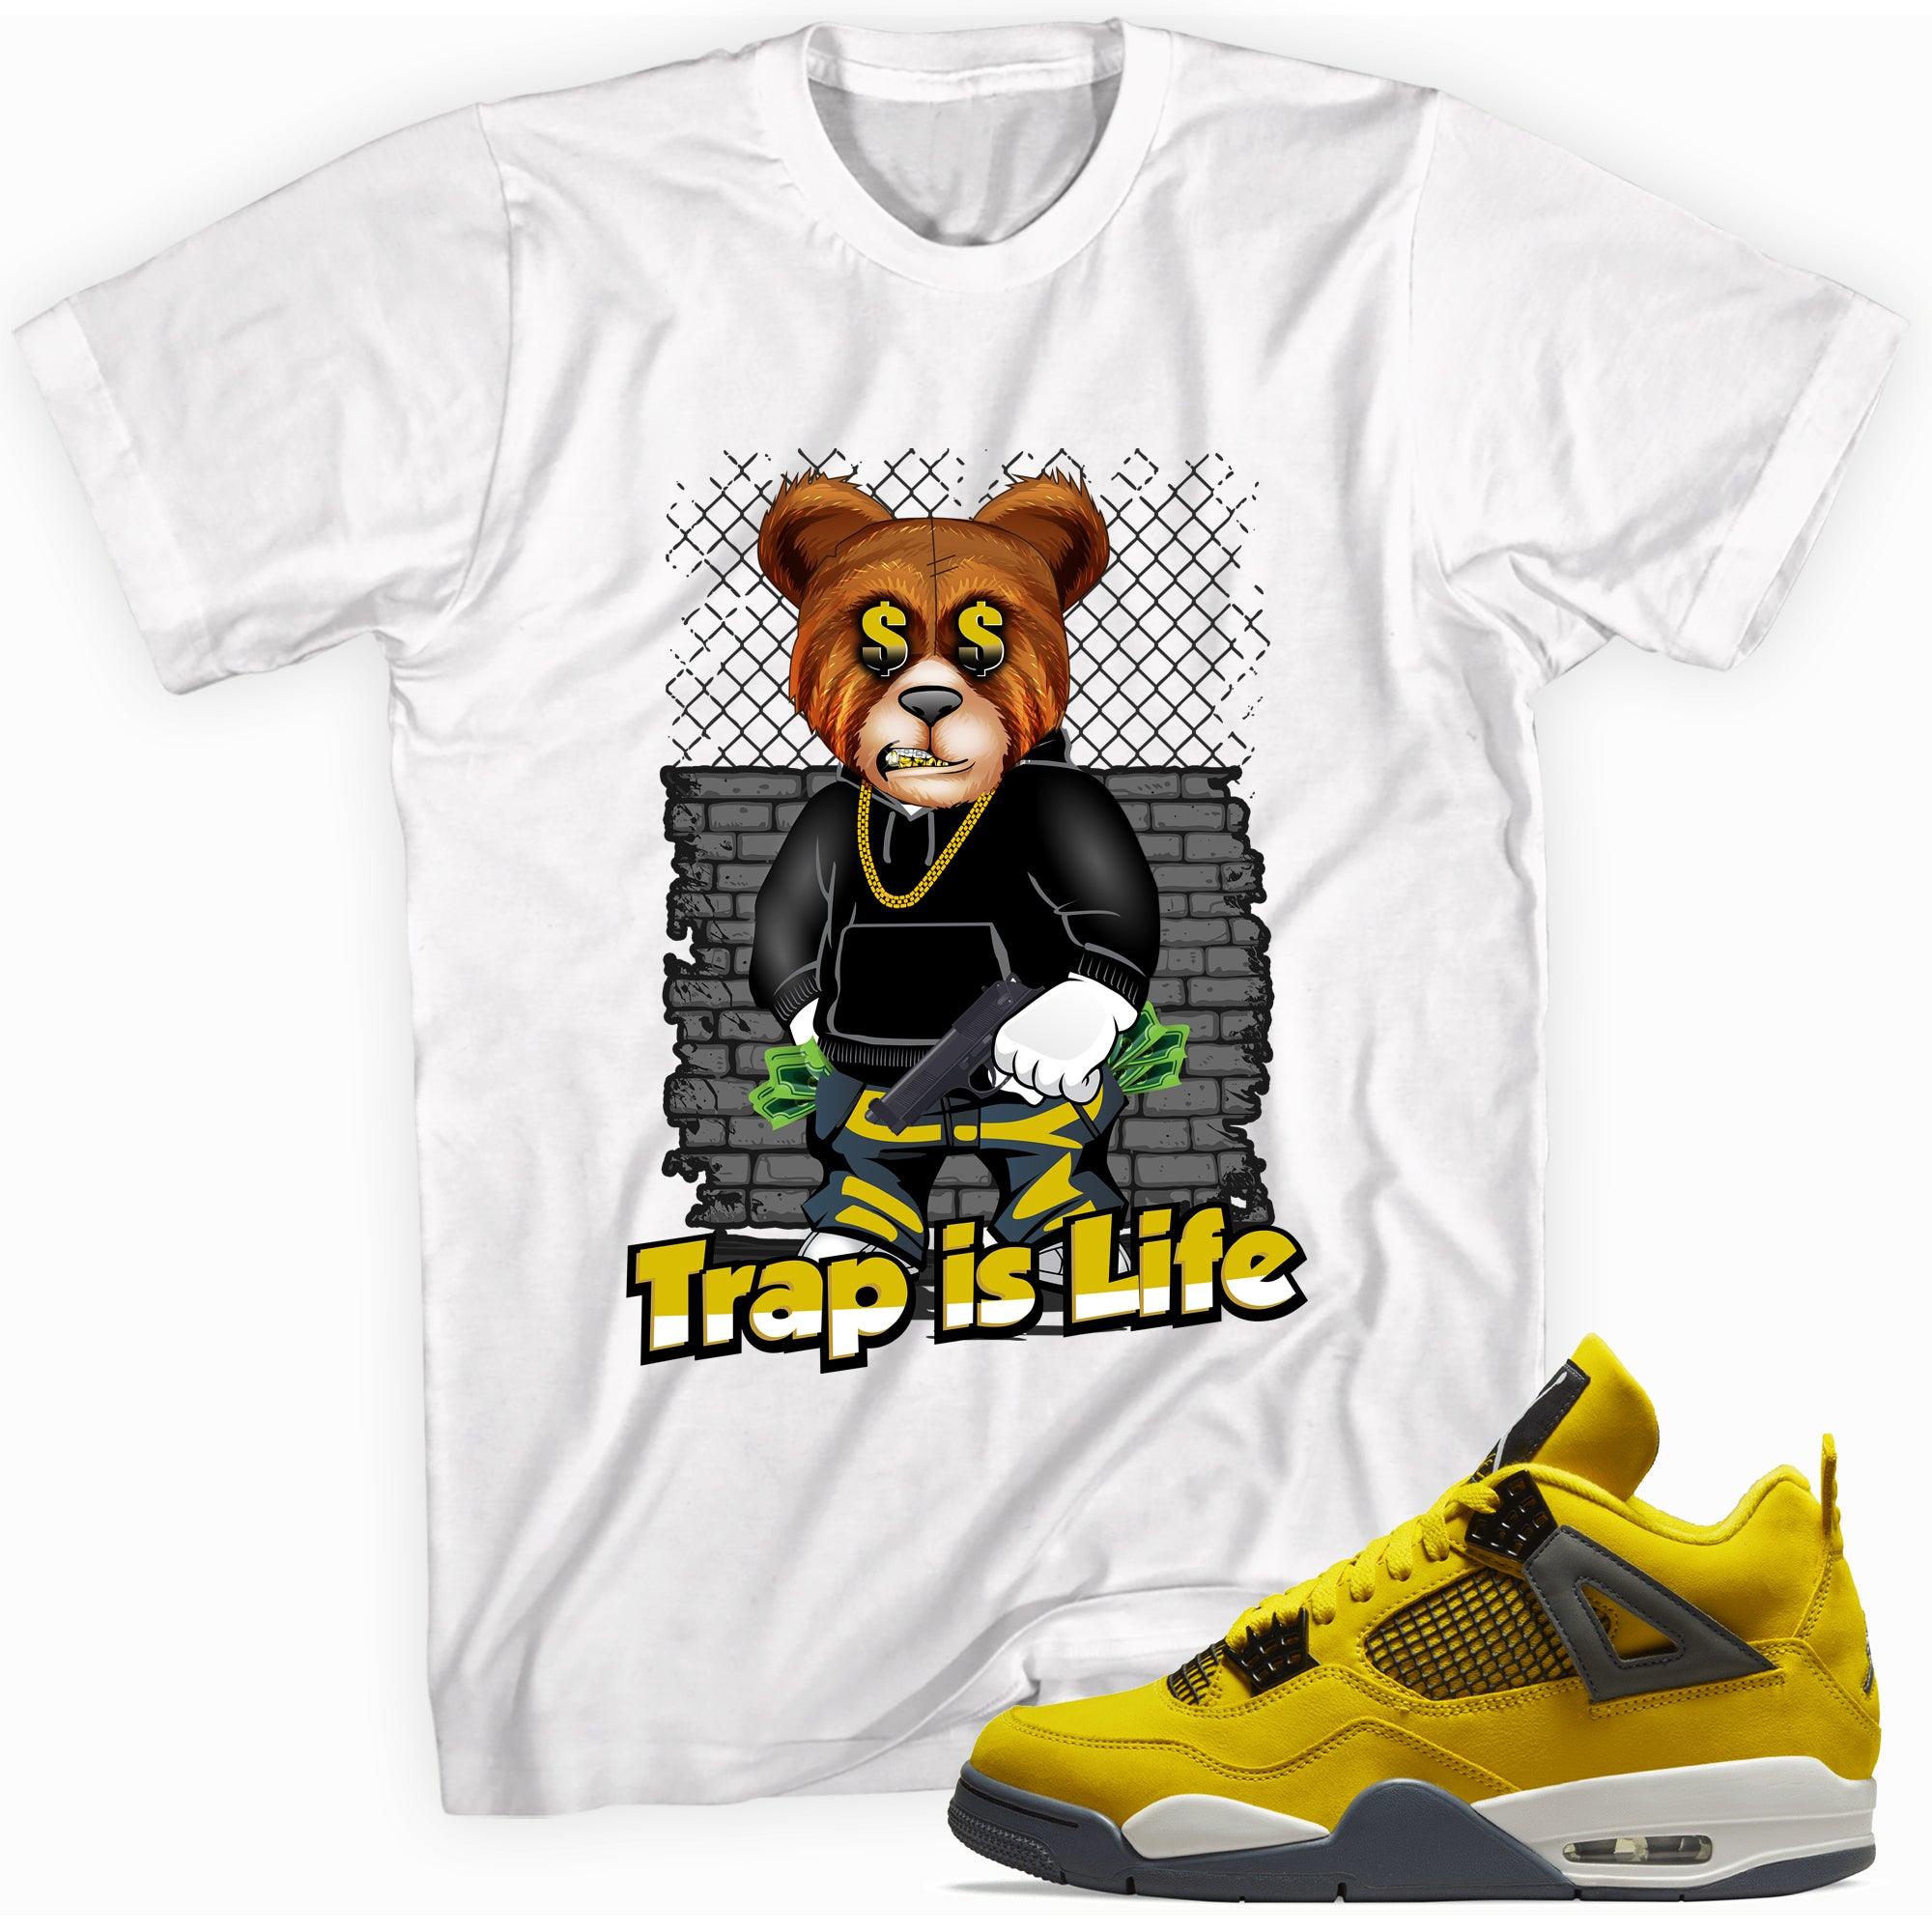 Trap Is Life Shirt Jordan 4s Retro Lightning photo